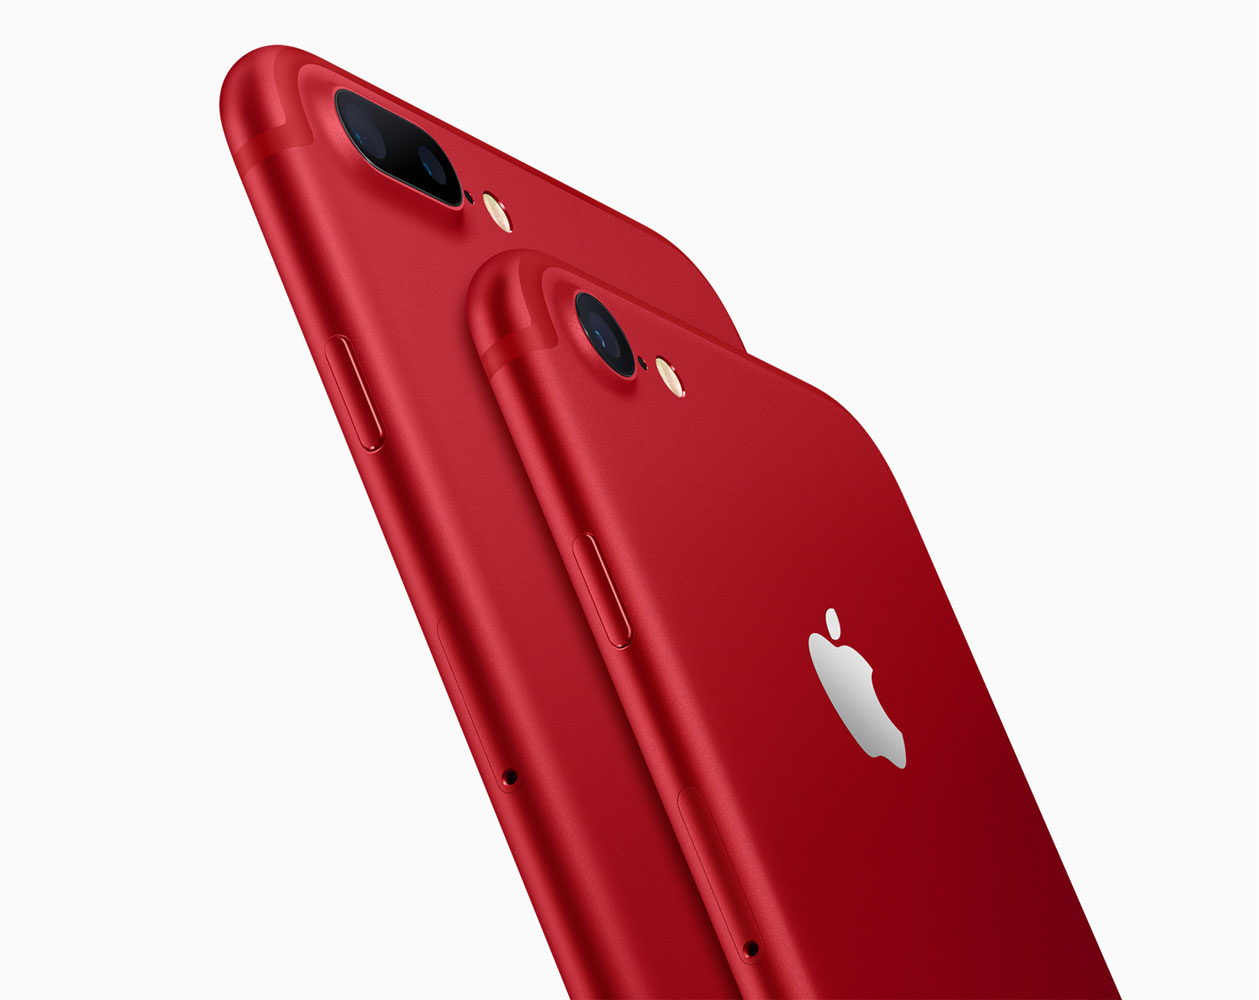 ドコモ、KDDI、ソフトバンク、「iPhone 7/7 Plus」の「(PRODUCT)RED Special Edition」の販売を開始